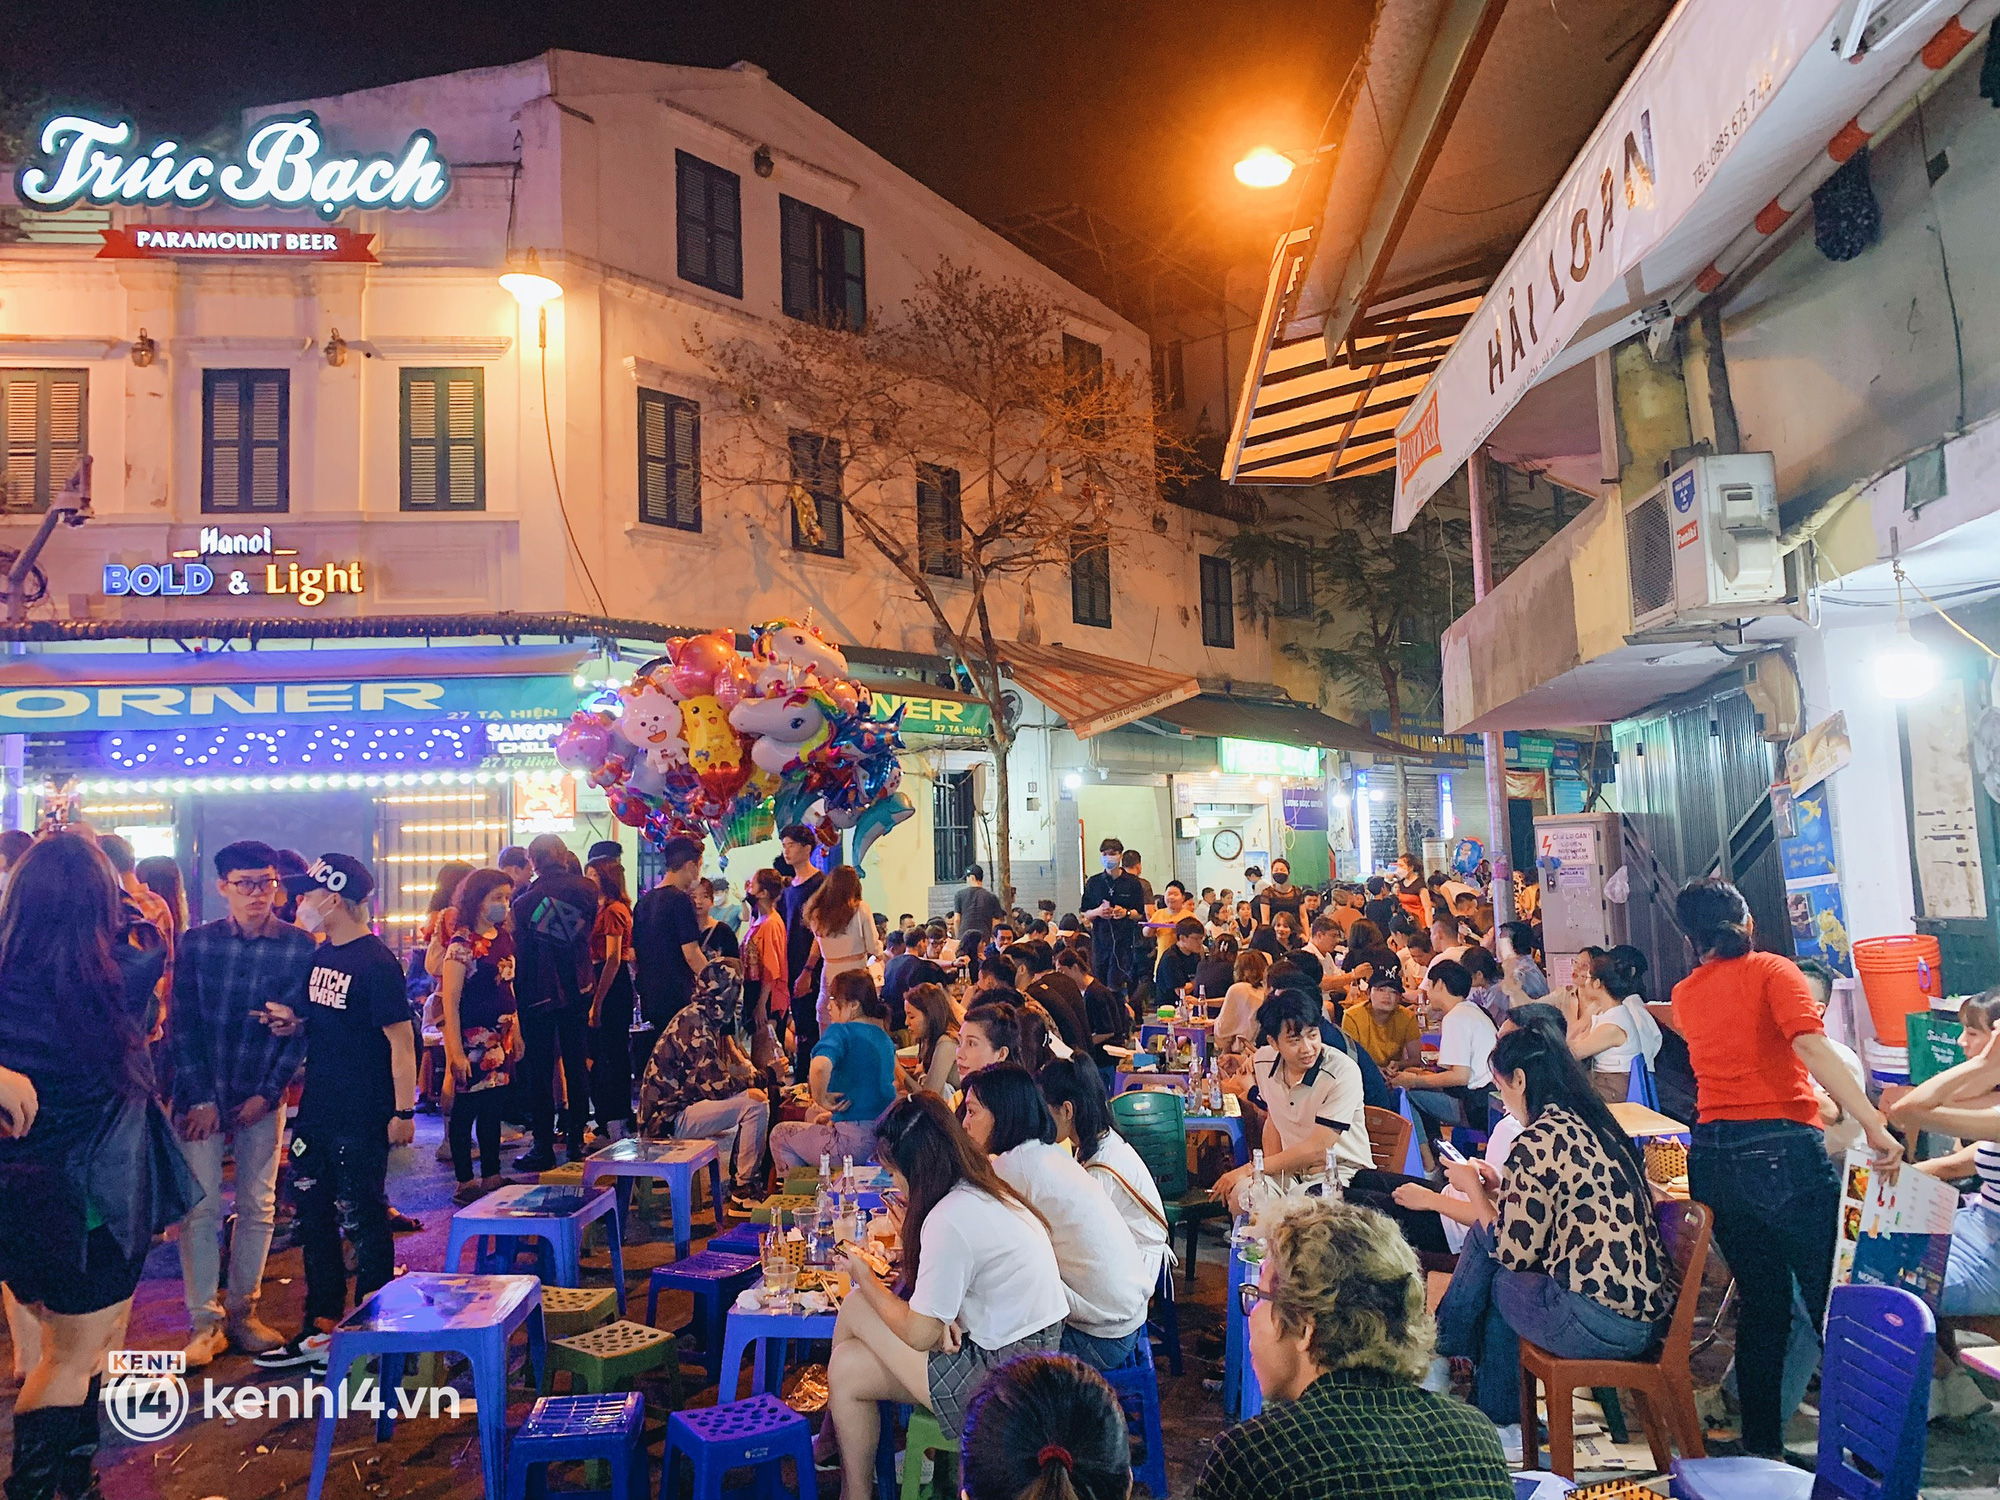 Con phố sôi động nhất về đêm ở Hà Nội hồi sinh mãnh liệt sau hơn 1 năm kinh doanh ảm đạm - Ảnh 8.